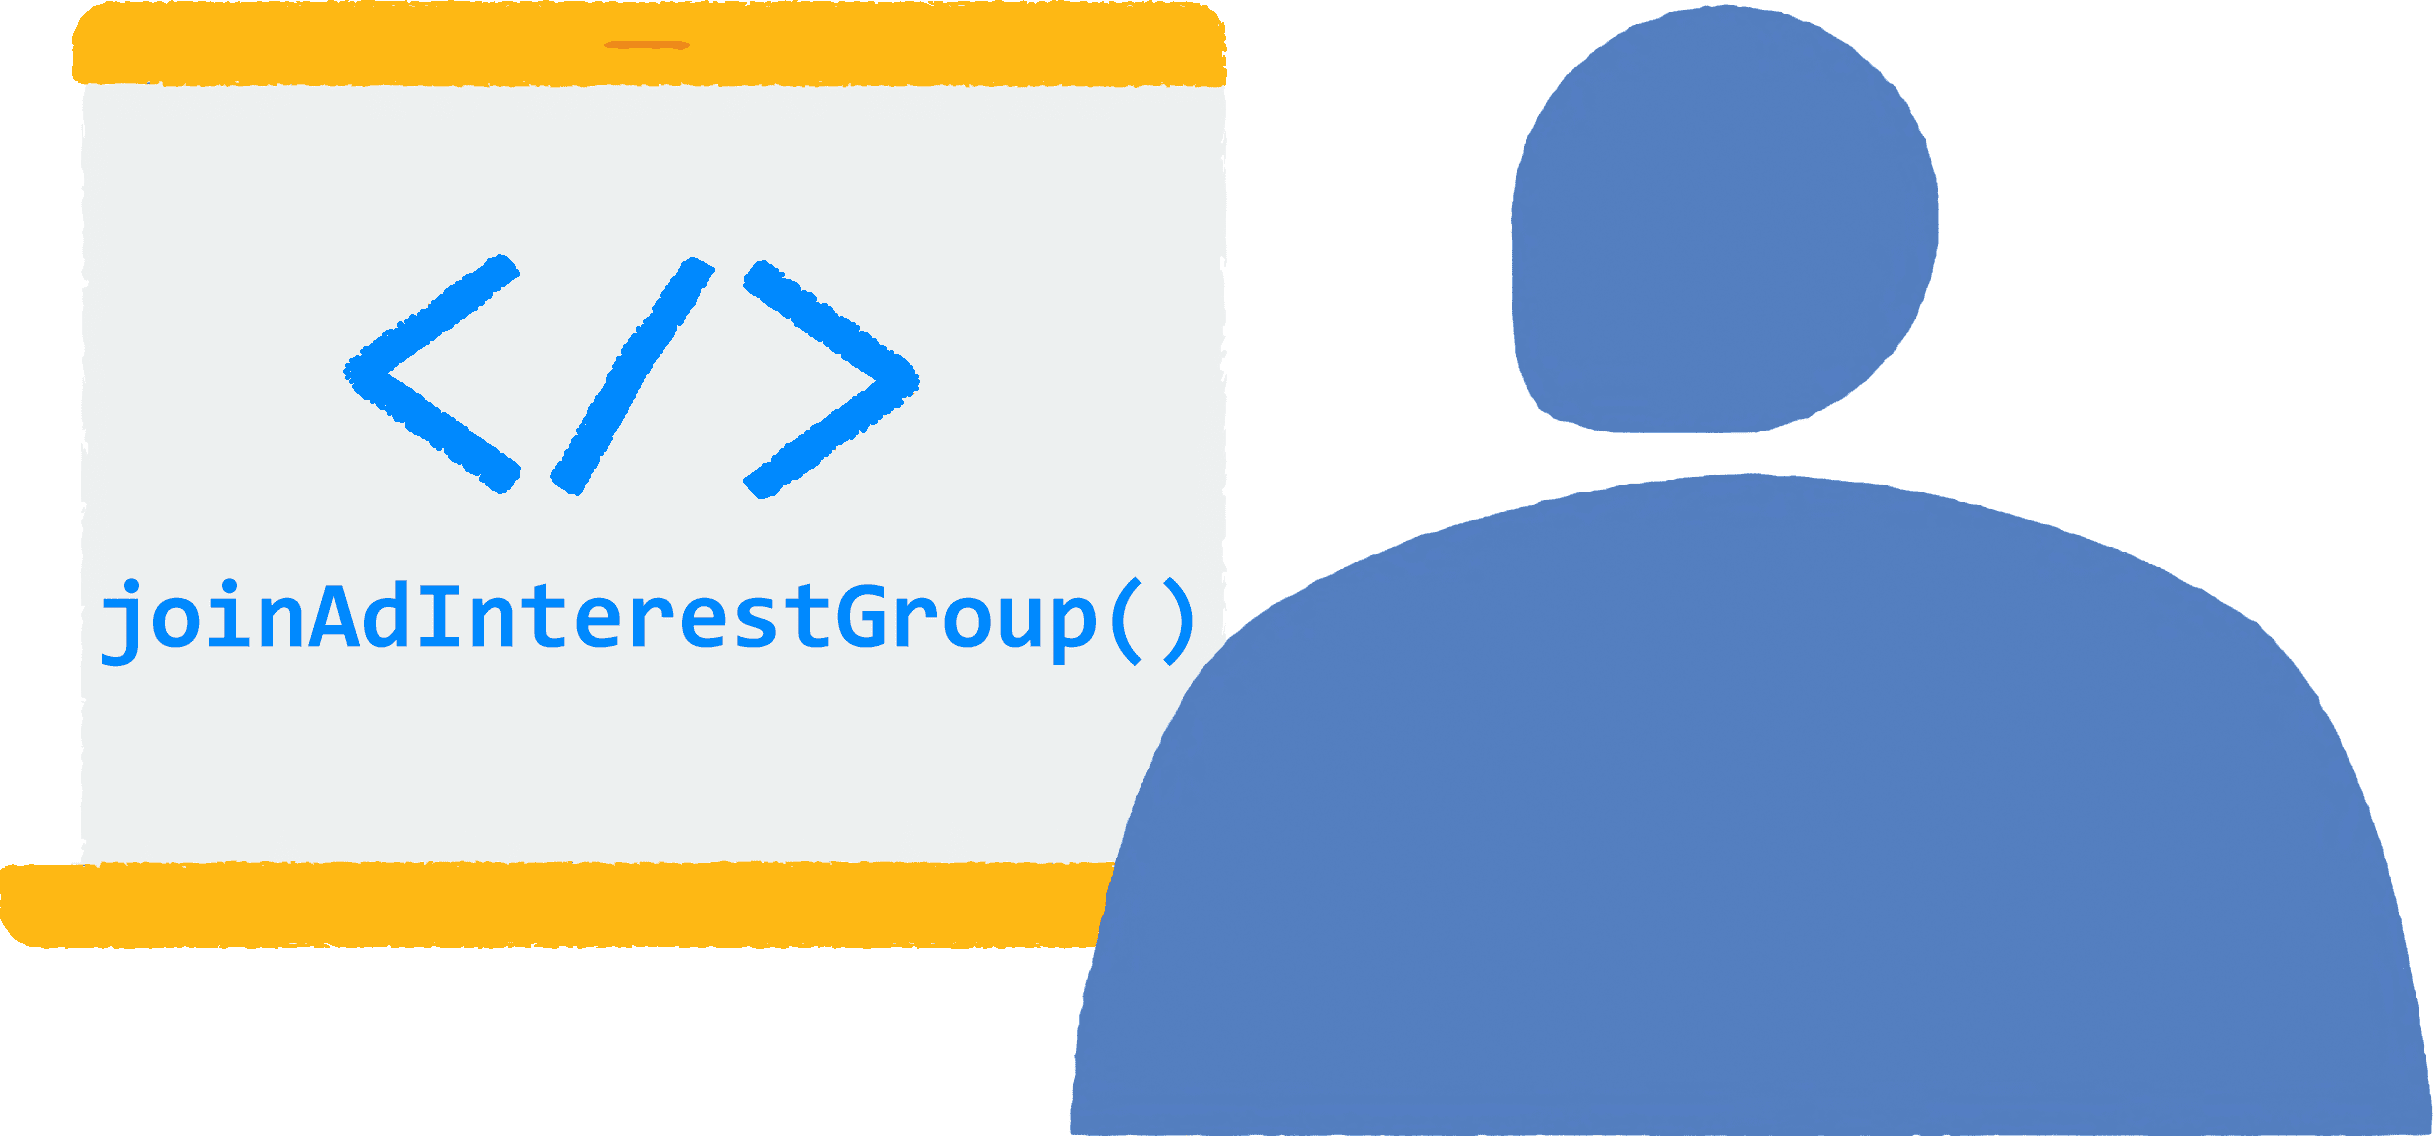 Dizüstü bilgisayarında bir tarayıcı açıp bir siteyi ziyaret eden bir kullanıcı. Reklam ilgi alanı gruplarına katılmak için kullanılan JavaScript kodu tarayıcıda çalışıyor.